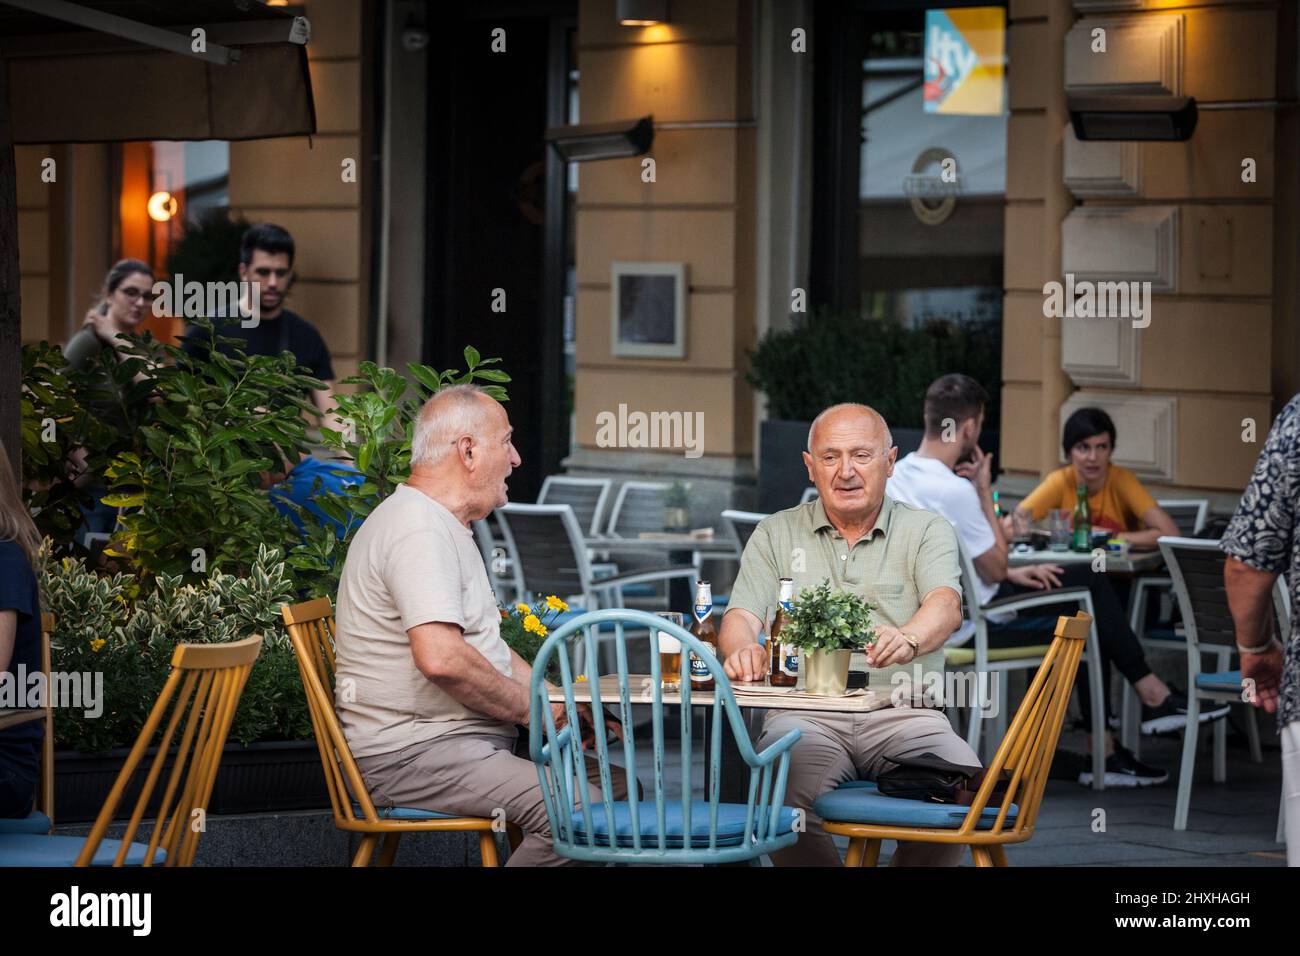 Bild von zwei älteren Männern, die im Sommer am Tisch einer Terrasse einer Bar in Belgrad, Serbien, Bier trinken. Stockfoto